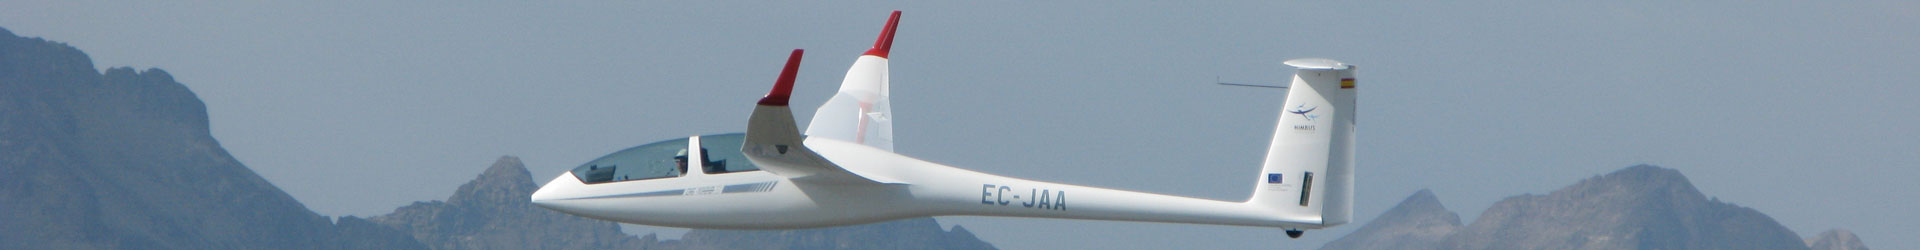 Cabecera avión - Fly-Pyr Santa Cilia